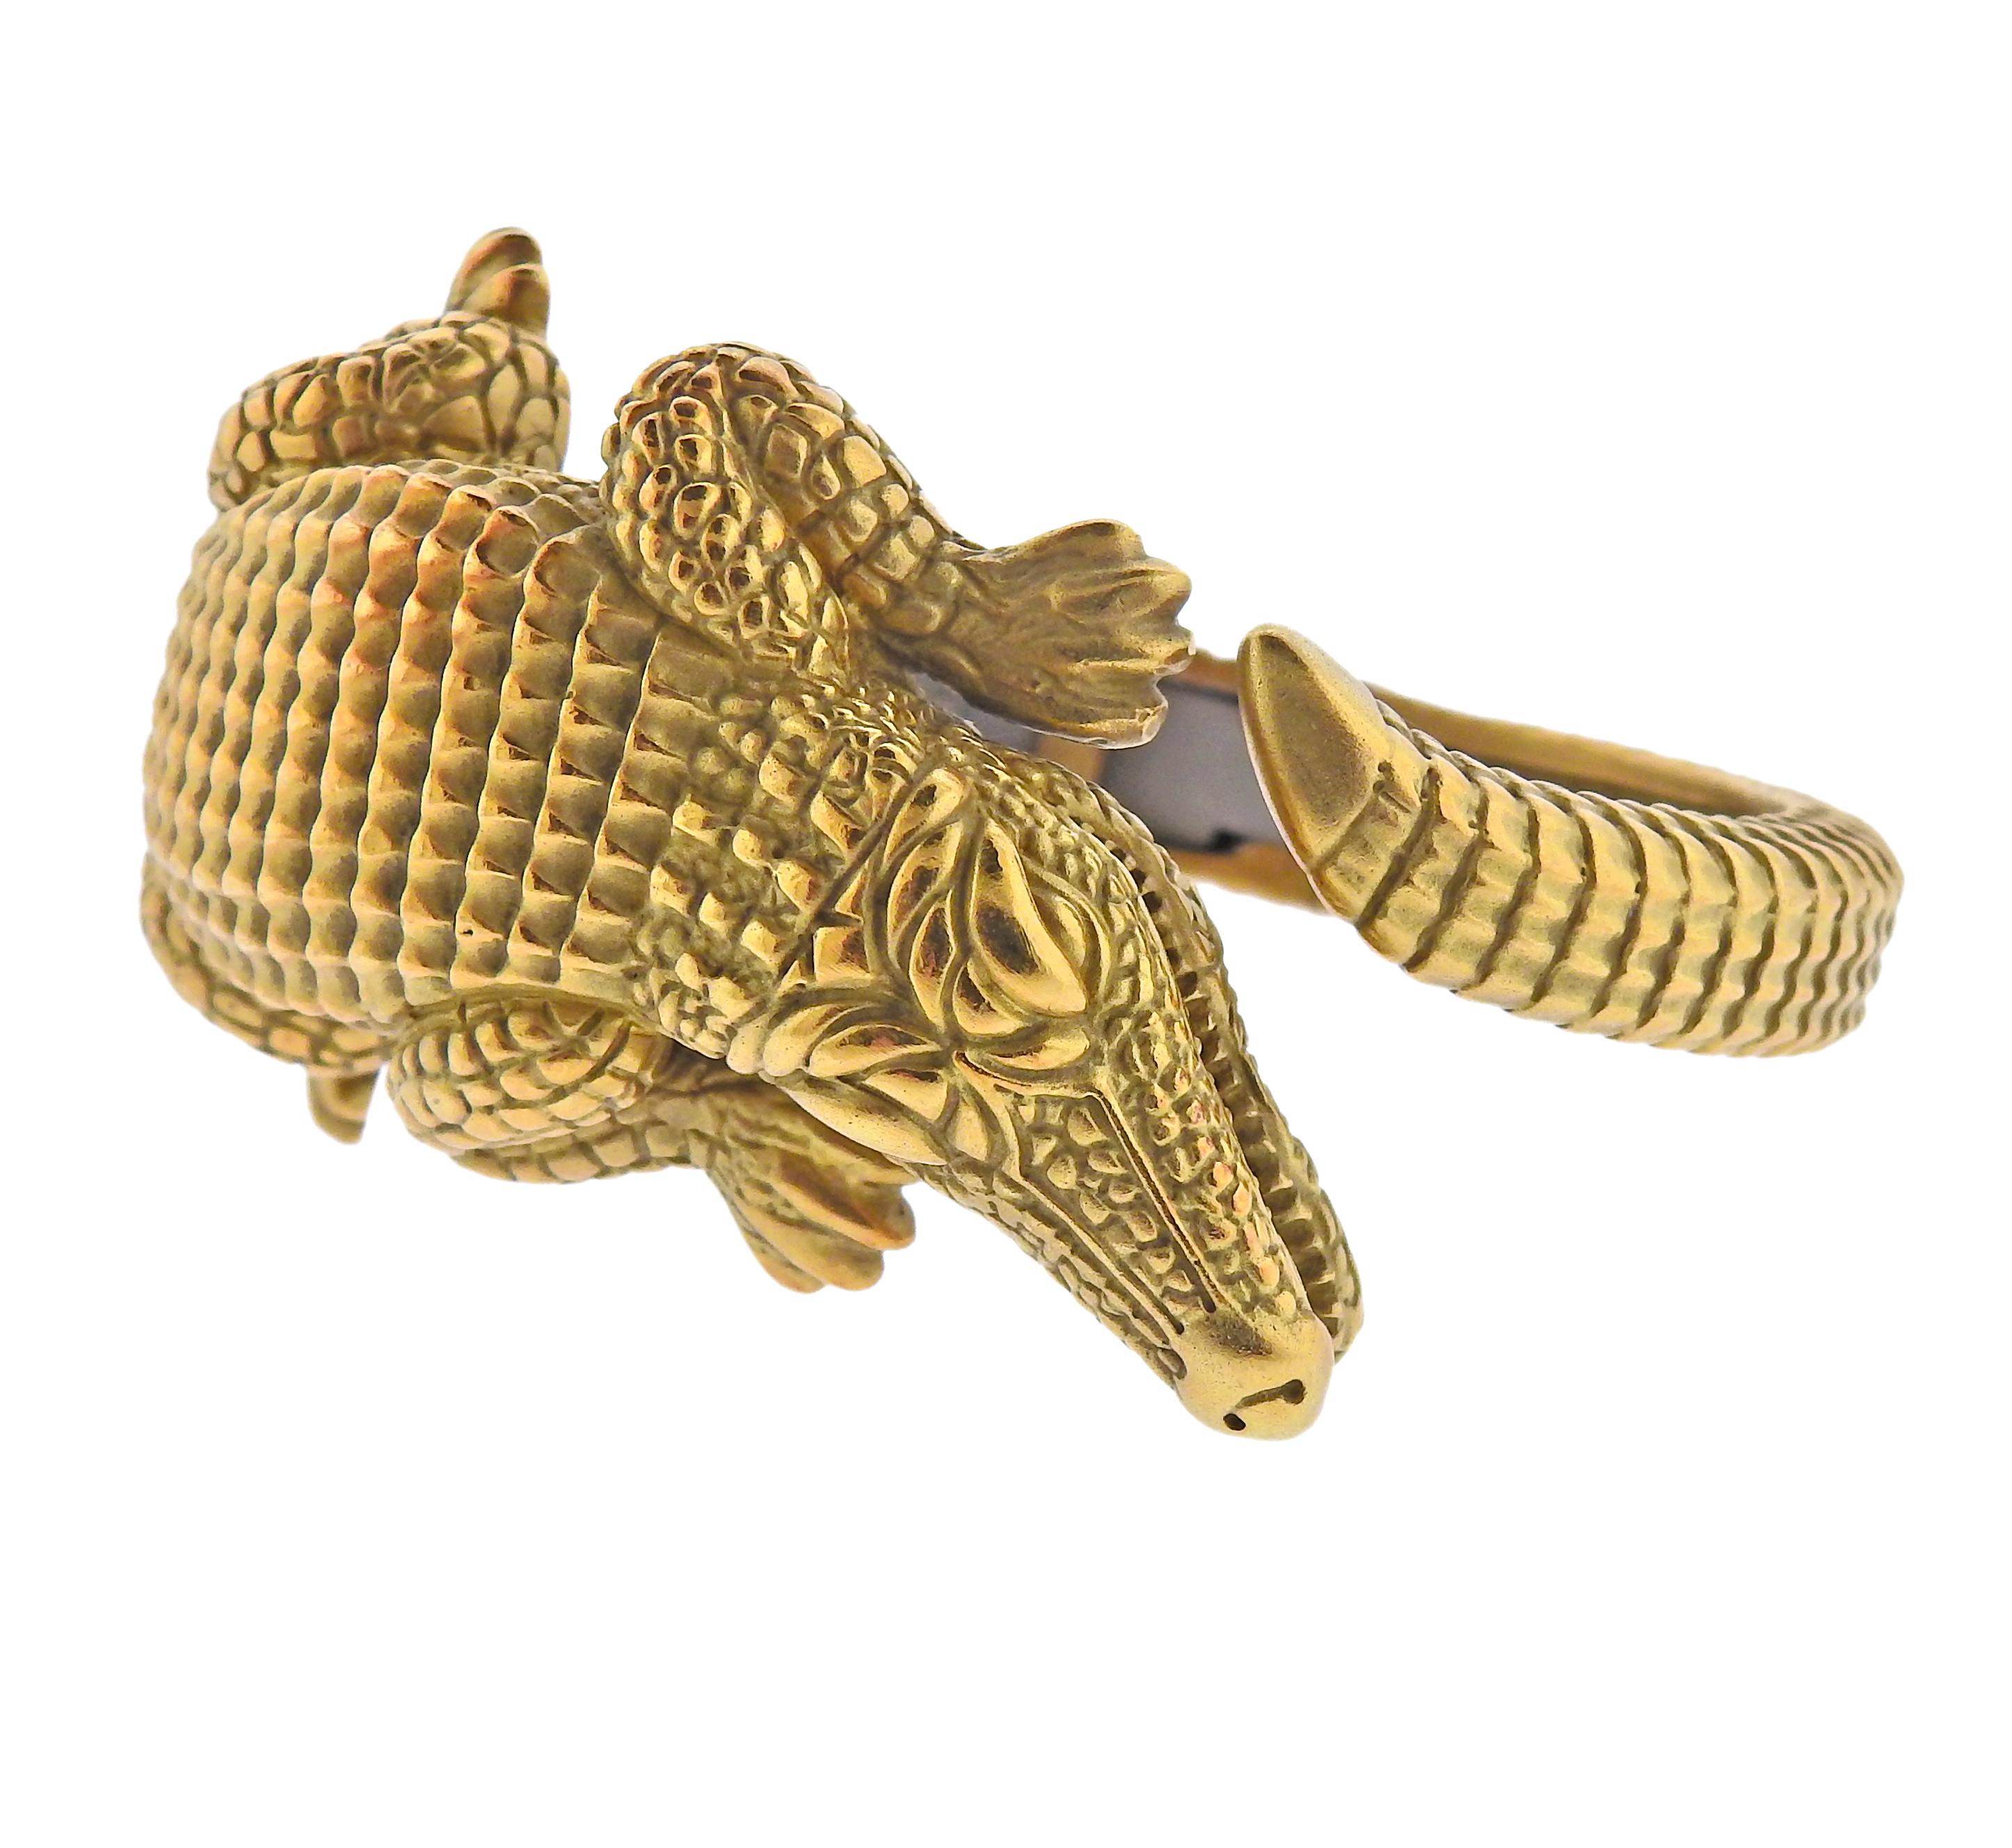 Iconic Alligator bracelet by Barry Kieselstein-Cord in 18k gold.  Bracelet will fit approx. 7-7.5